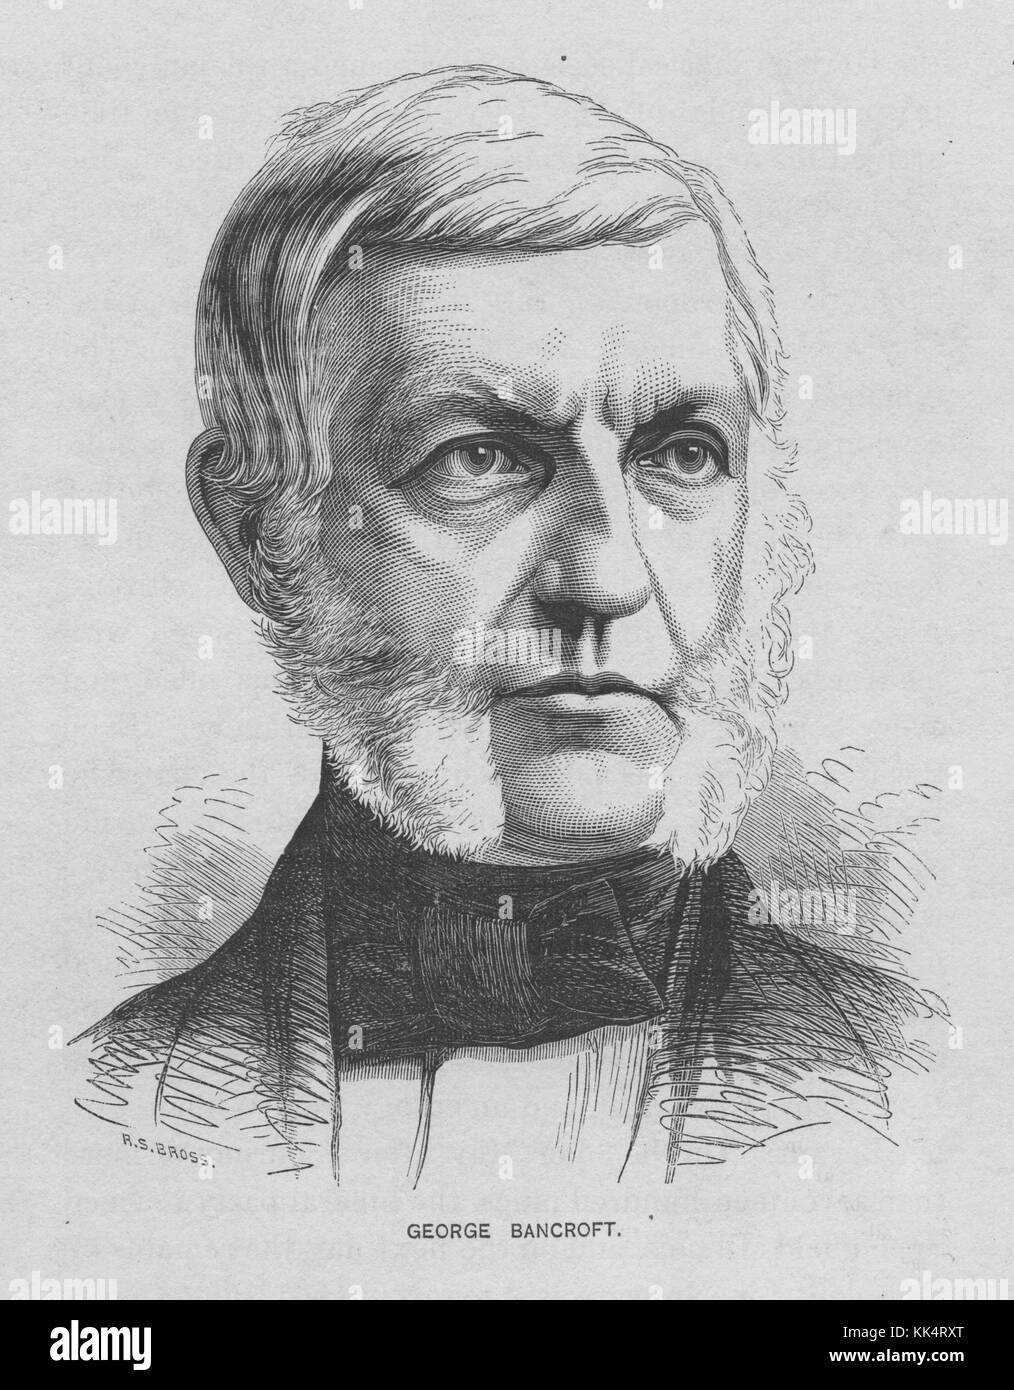 Ritratto inciso di George Bancroft, 17 ° segretario degli Stati Uniti della Marina, fondò la United States Naval Academy ad Annapolis nel 1845, Stati Uniti, 1870. Dalla Biblioteca pubblica di New York. Foto Stock